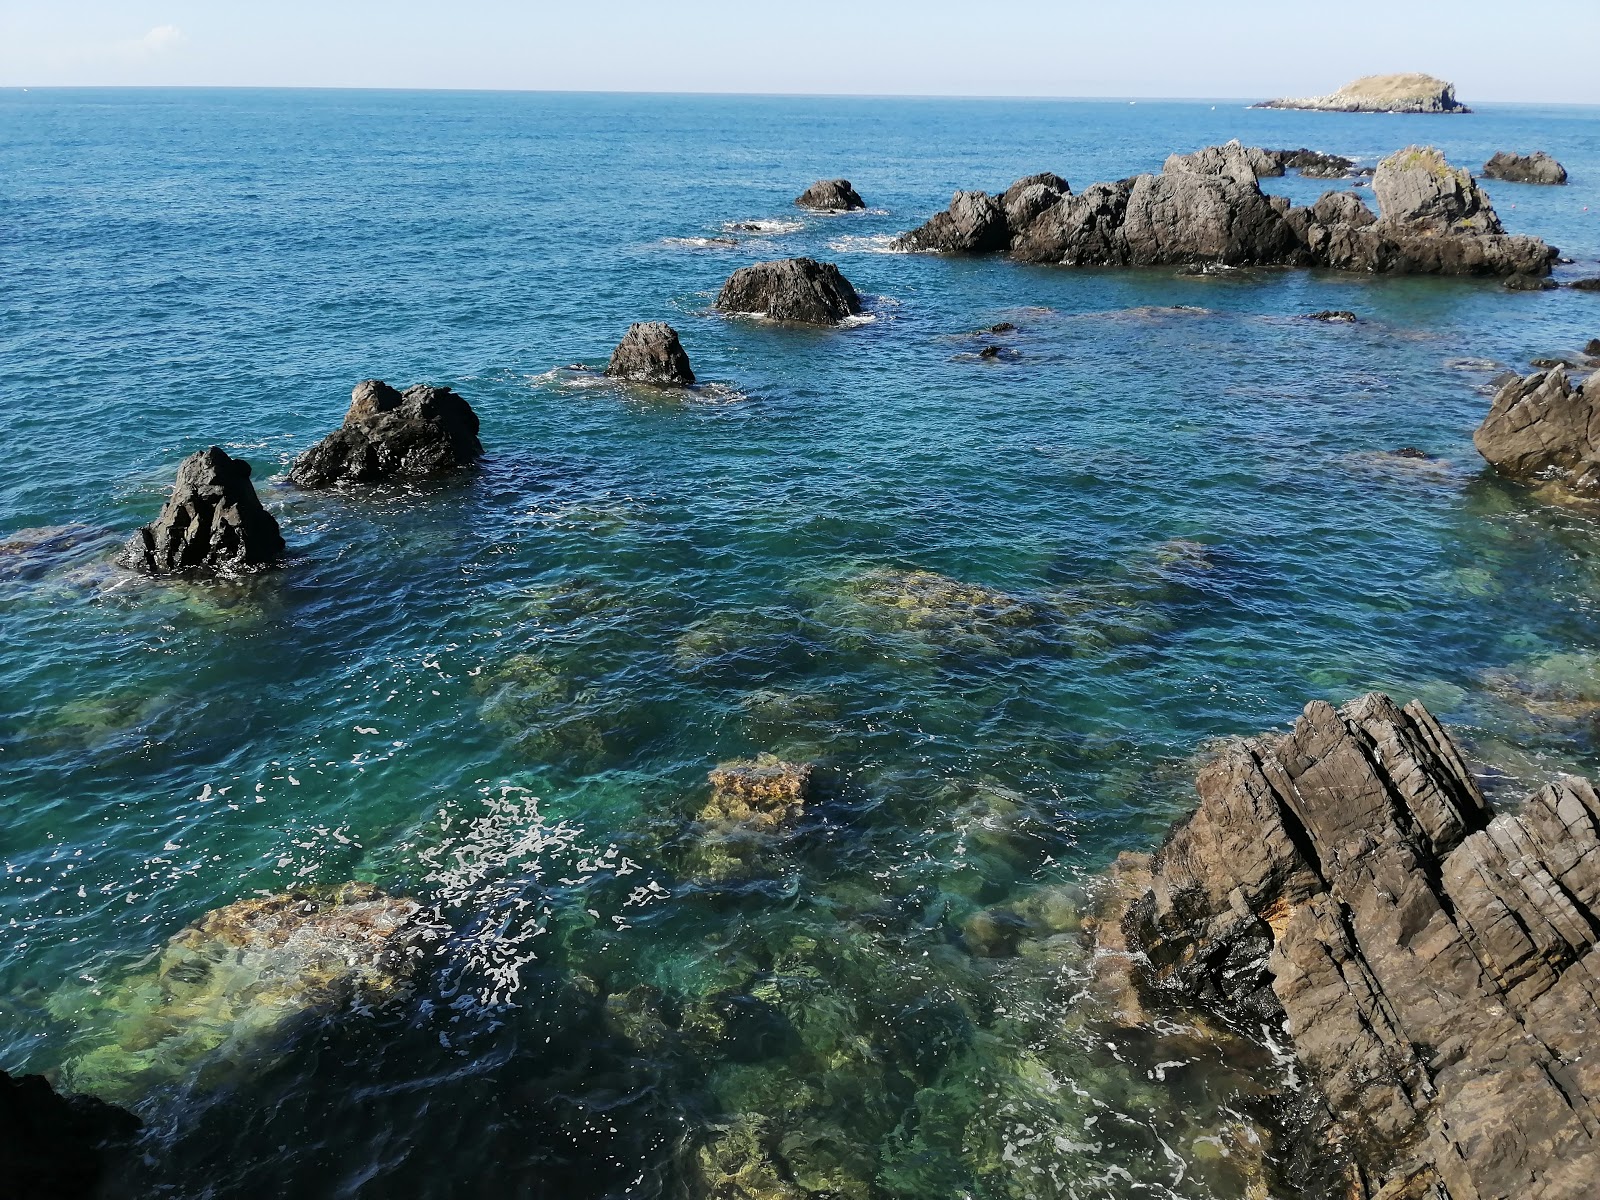 Foto von Spiaggia Illicini befindet sich in natürlicher umgebung